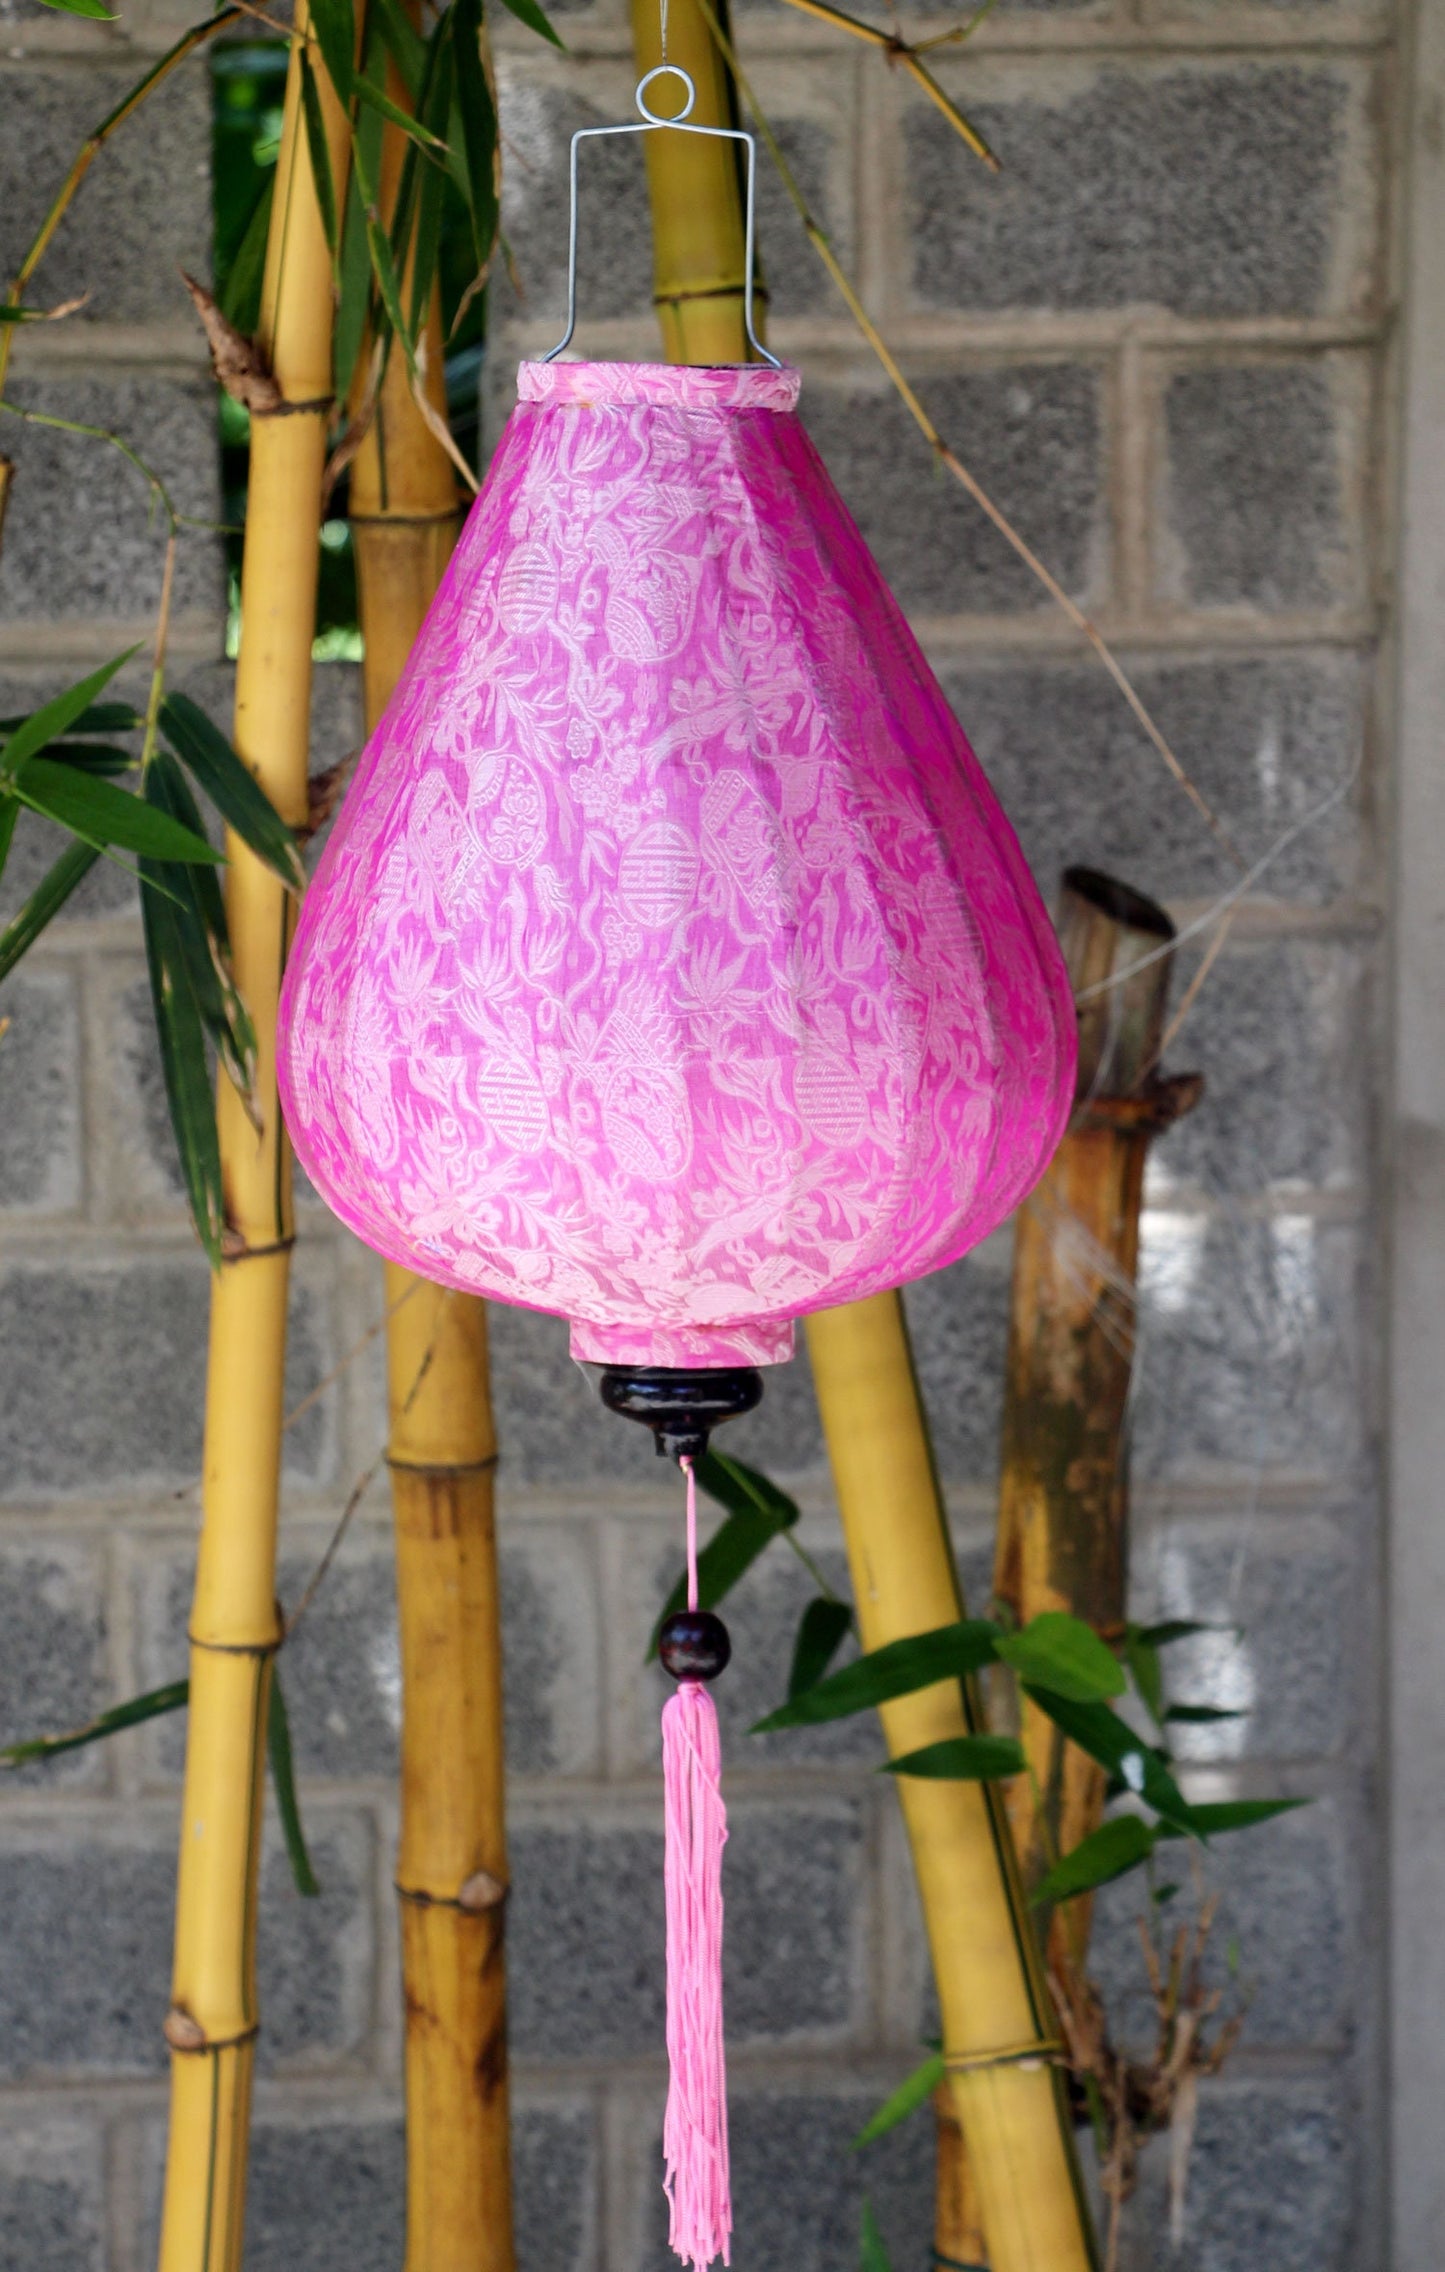 Set 2 pcs Hoi An silk lanterns 22''(55cm) for wedding decor, Garden decor,party decor- Ceiling lantern for Living room decor